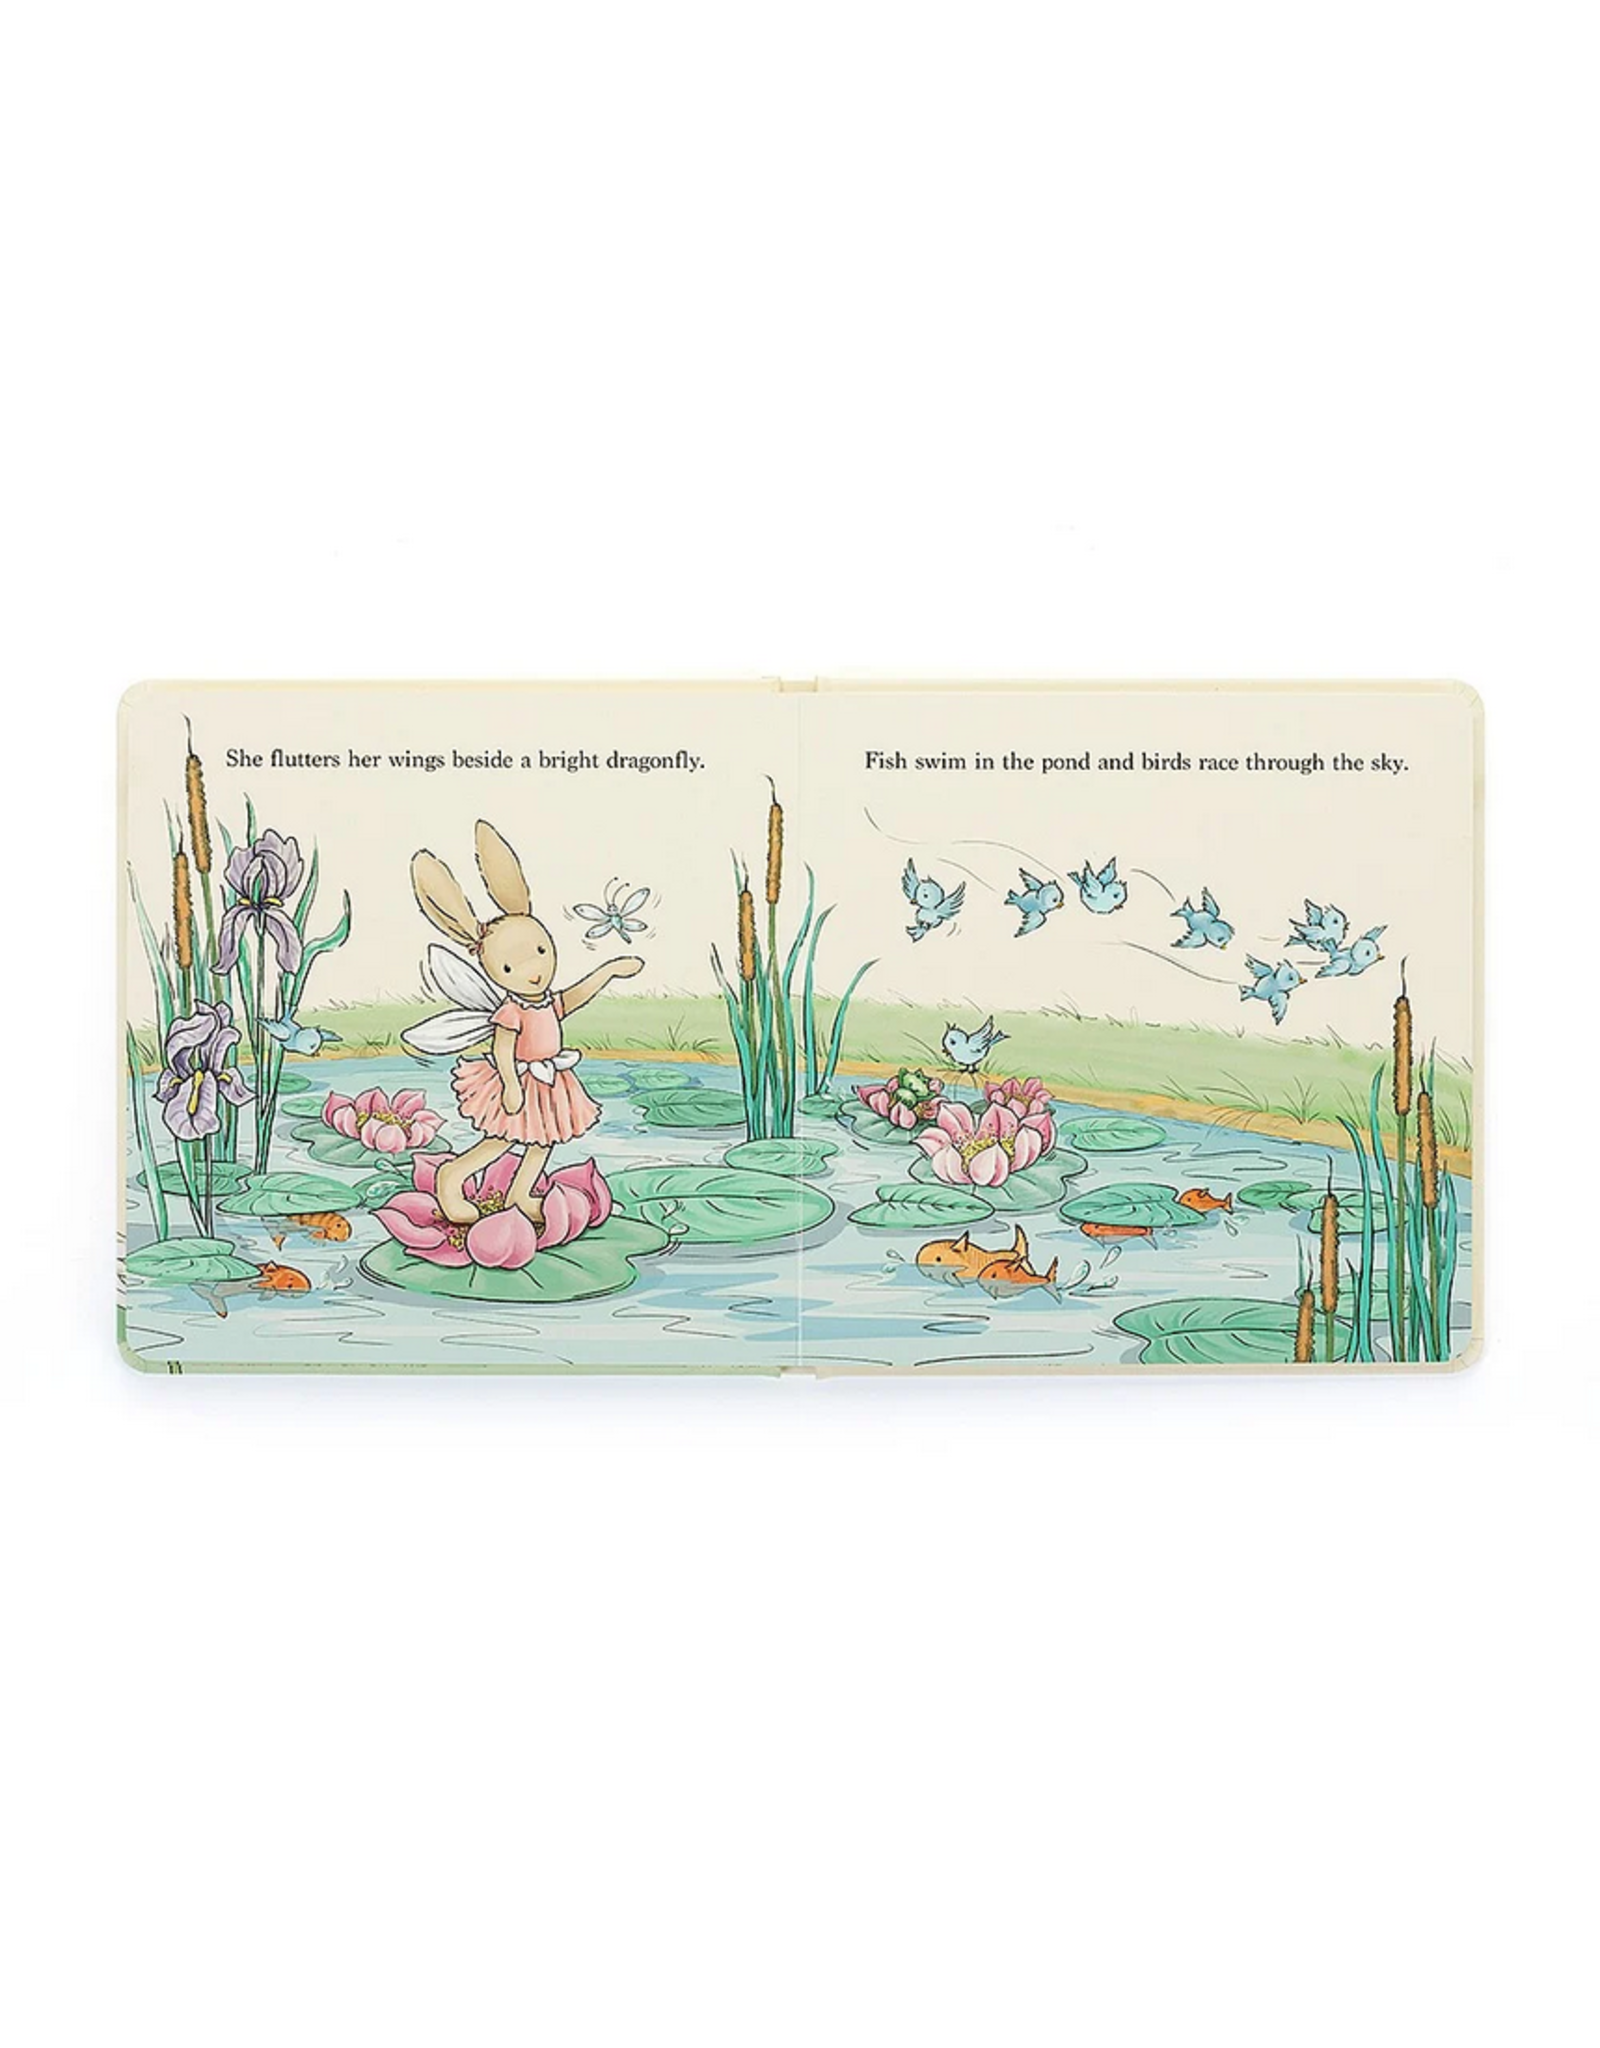 Jellycat Jellycat BK4LOTBF Lottie Fairy Bunny Book